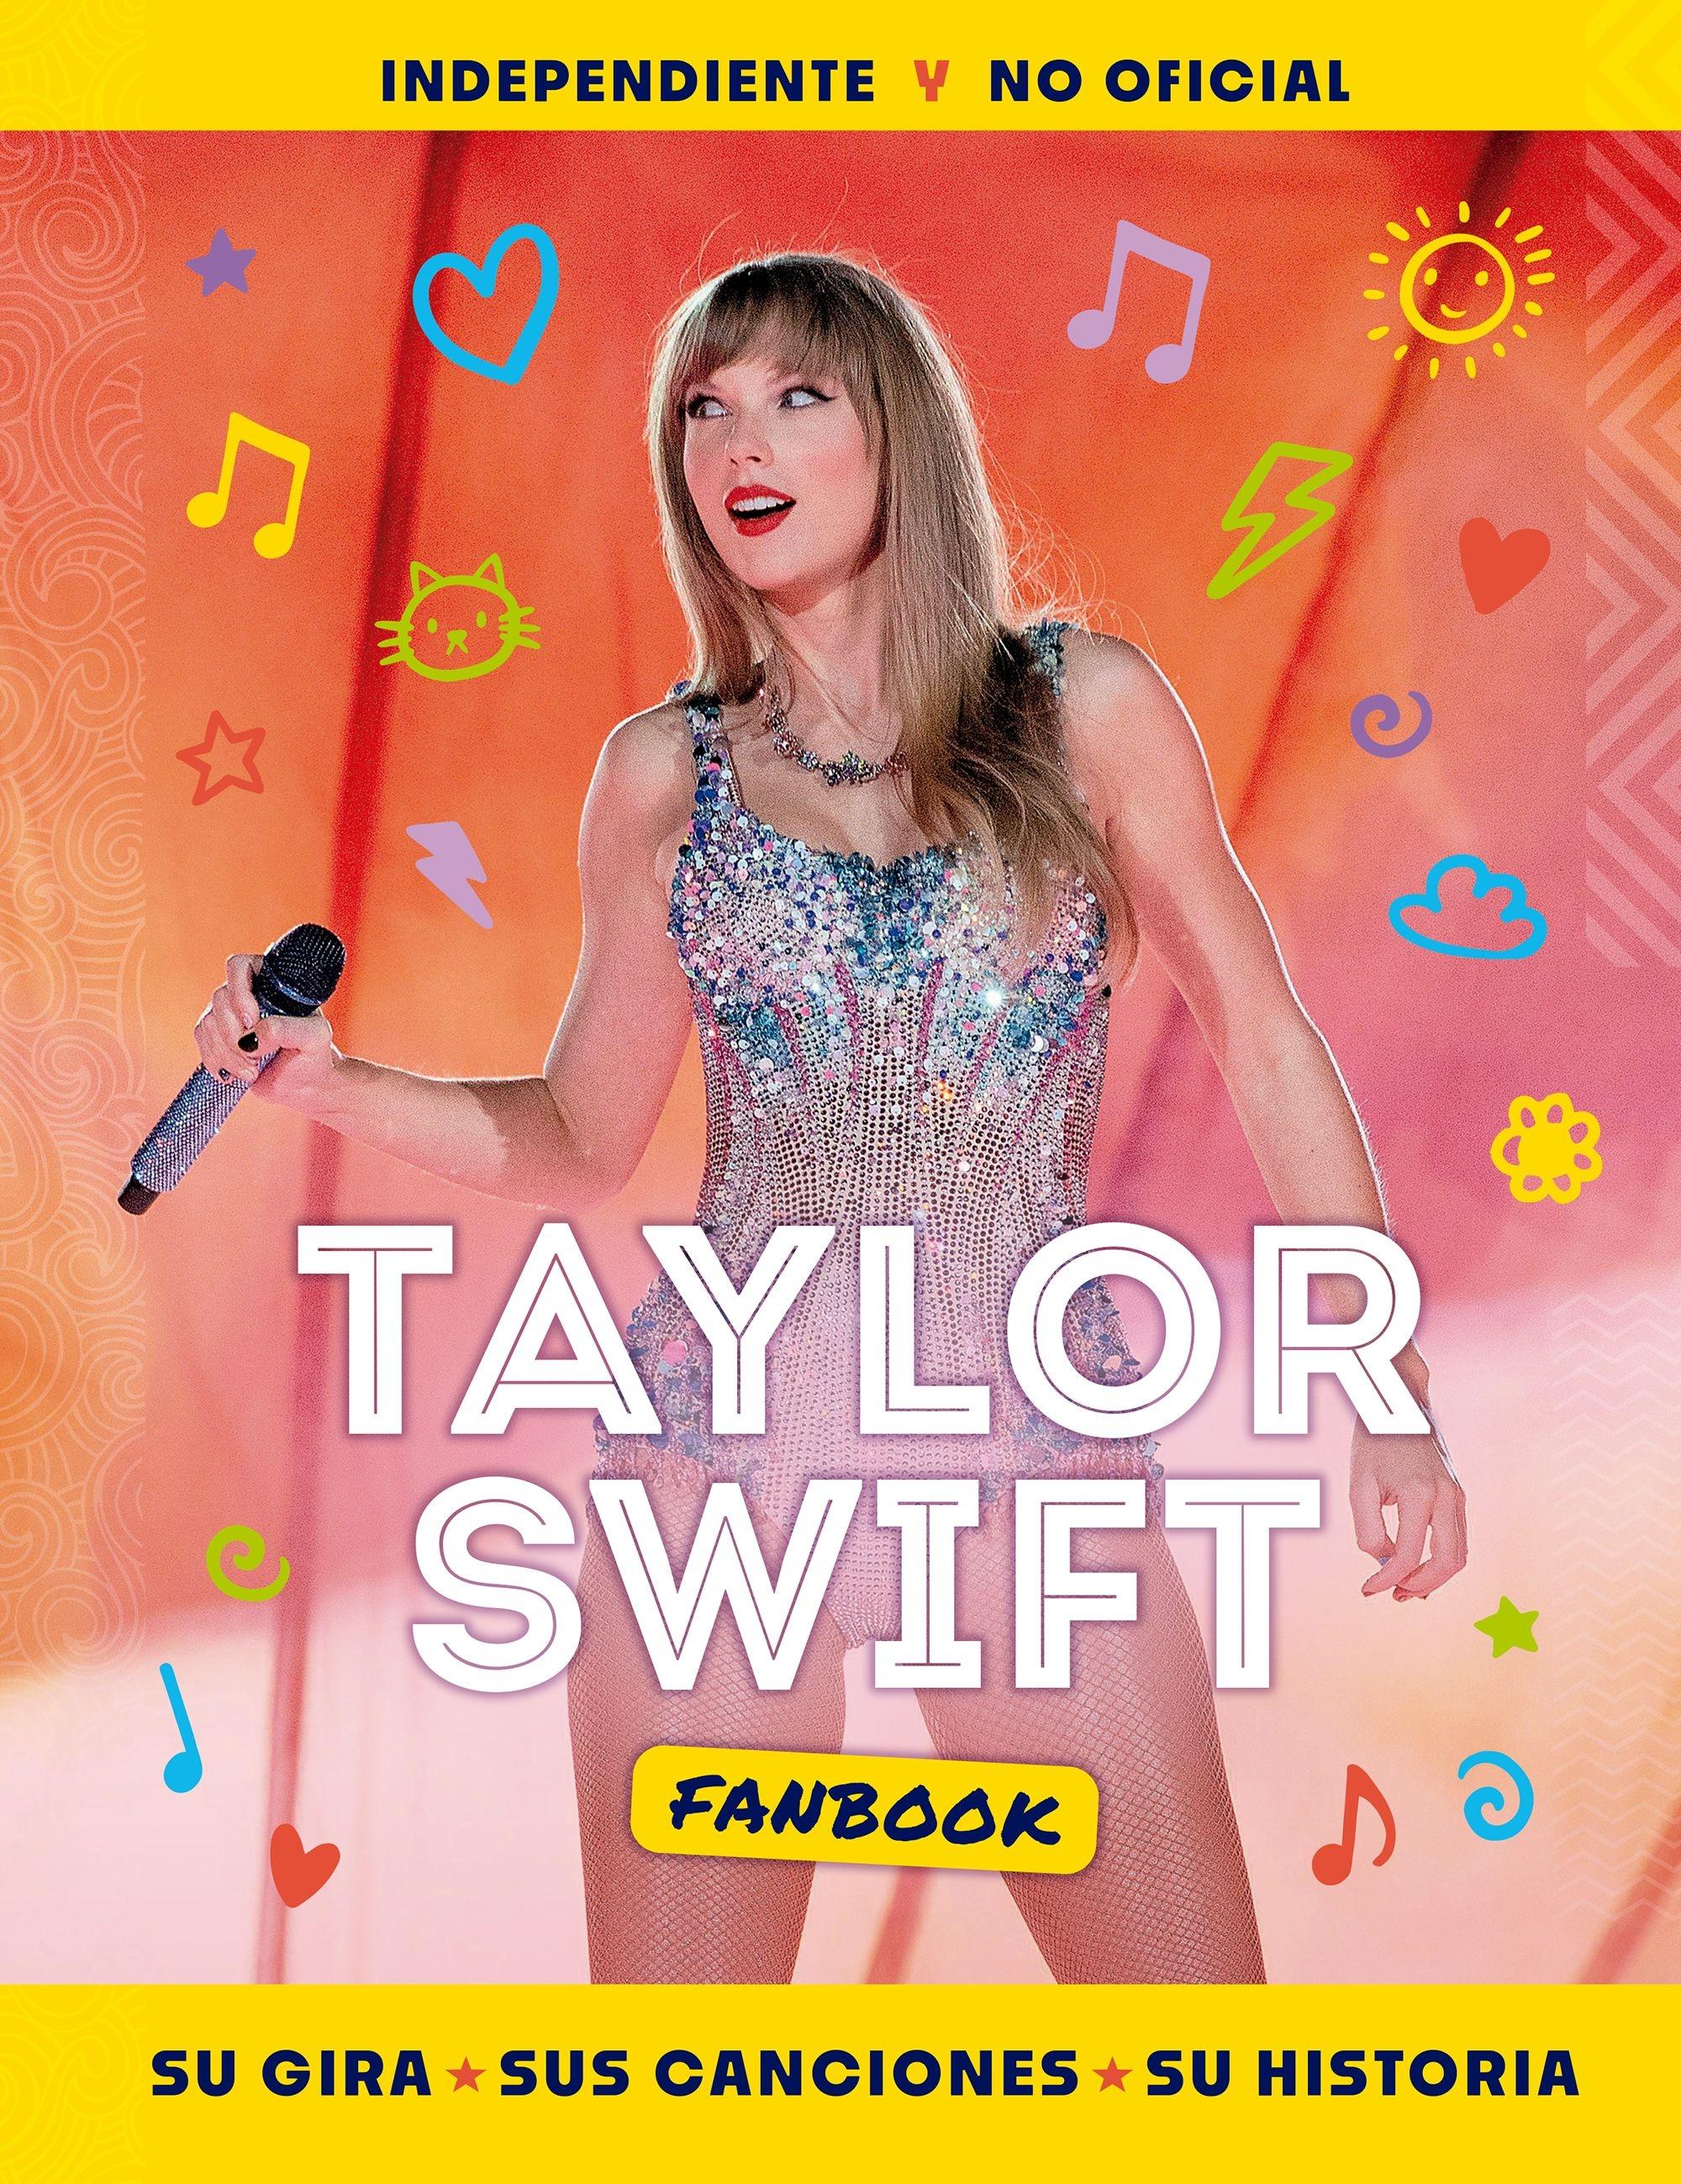 Taylor Swift Fanbook "Su gira, sus canciones y su historia". 